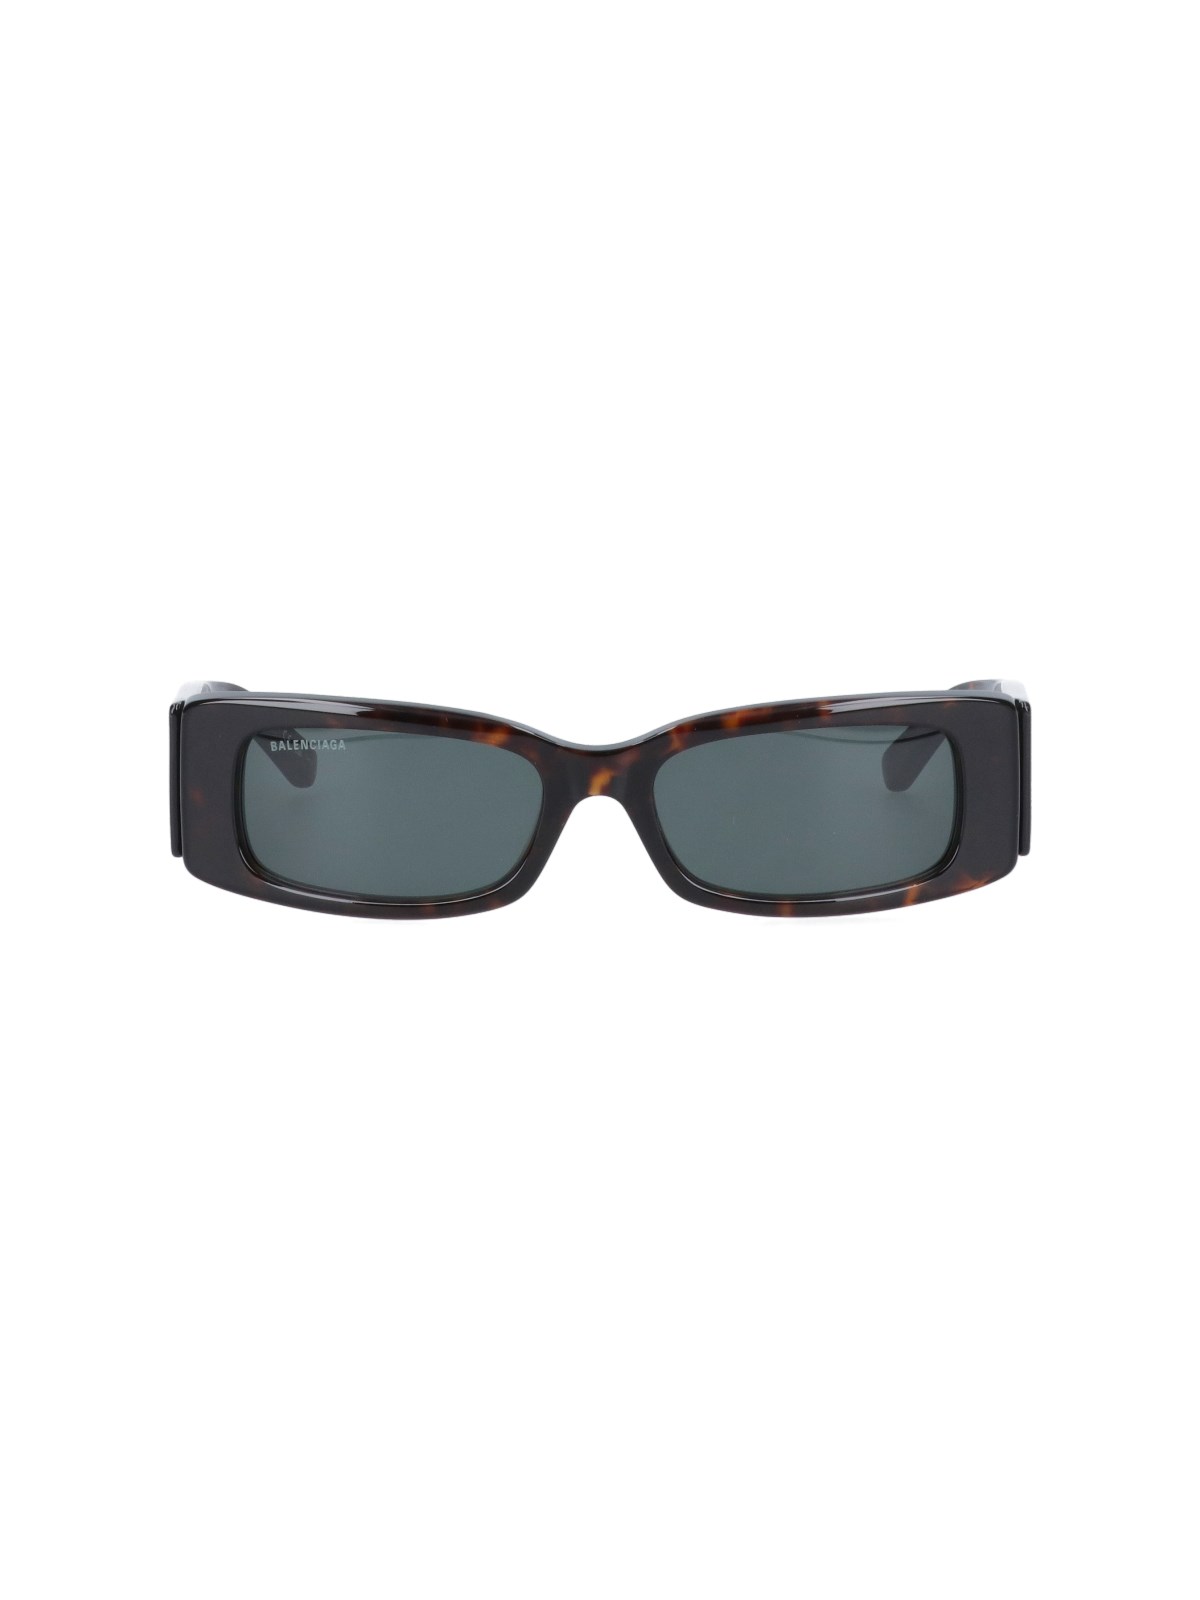 Balenciaga 'max Rectangle' Sunglasses In Brown